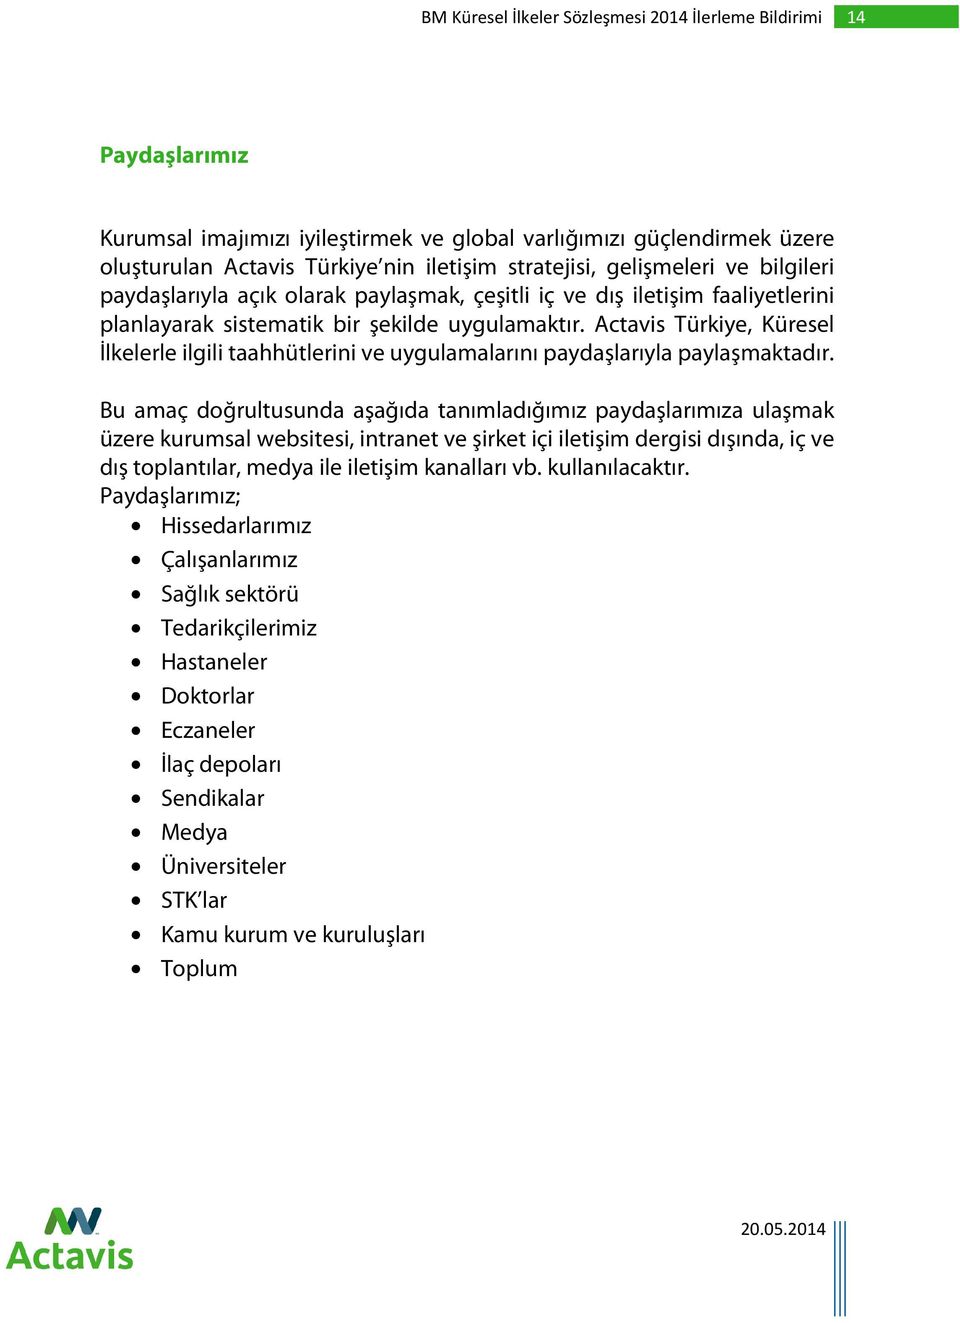 Actavis Türkiye, Küresel İlkelerle ilgili taahhütlerini ve uygulamalarını paydaşlarıyla paylaşmaktadır.